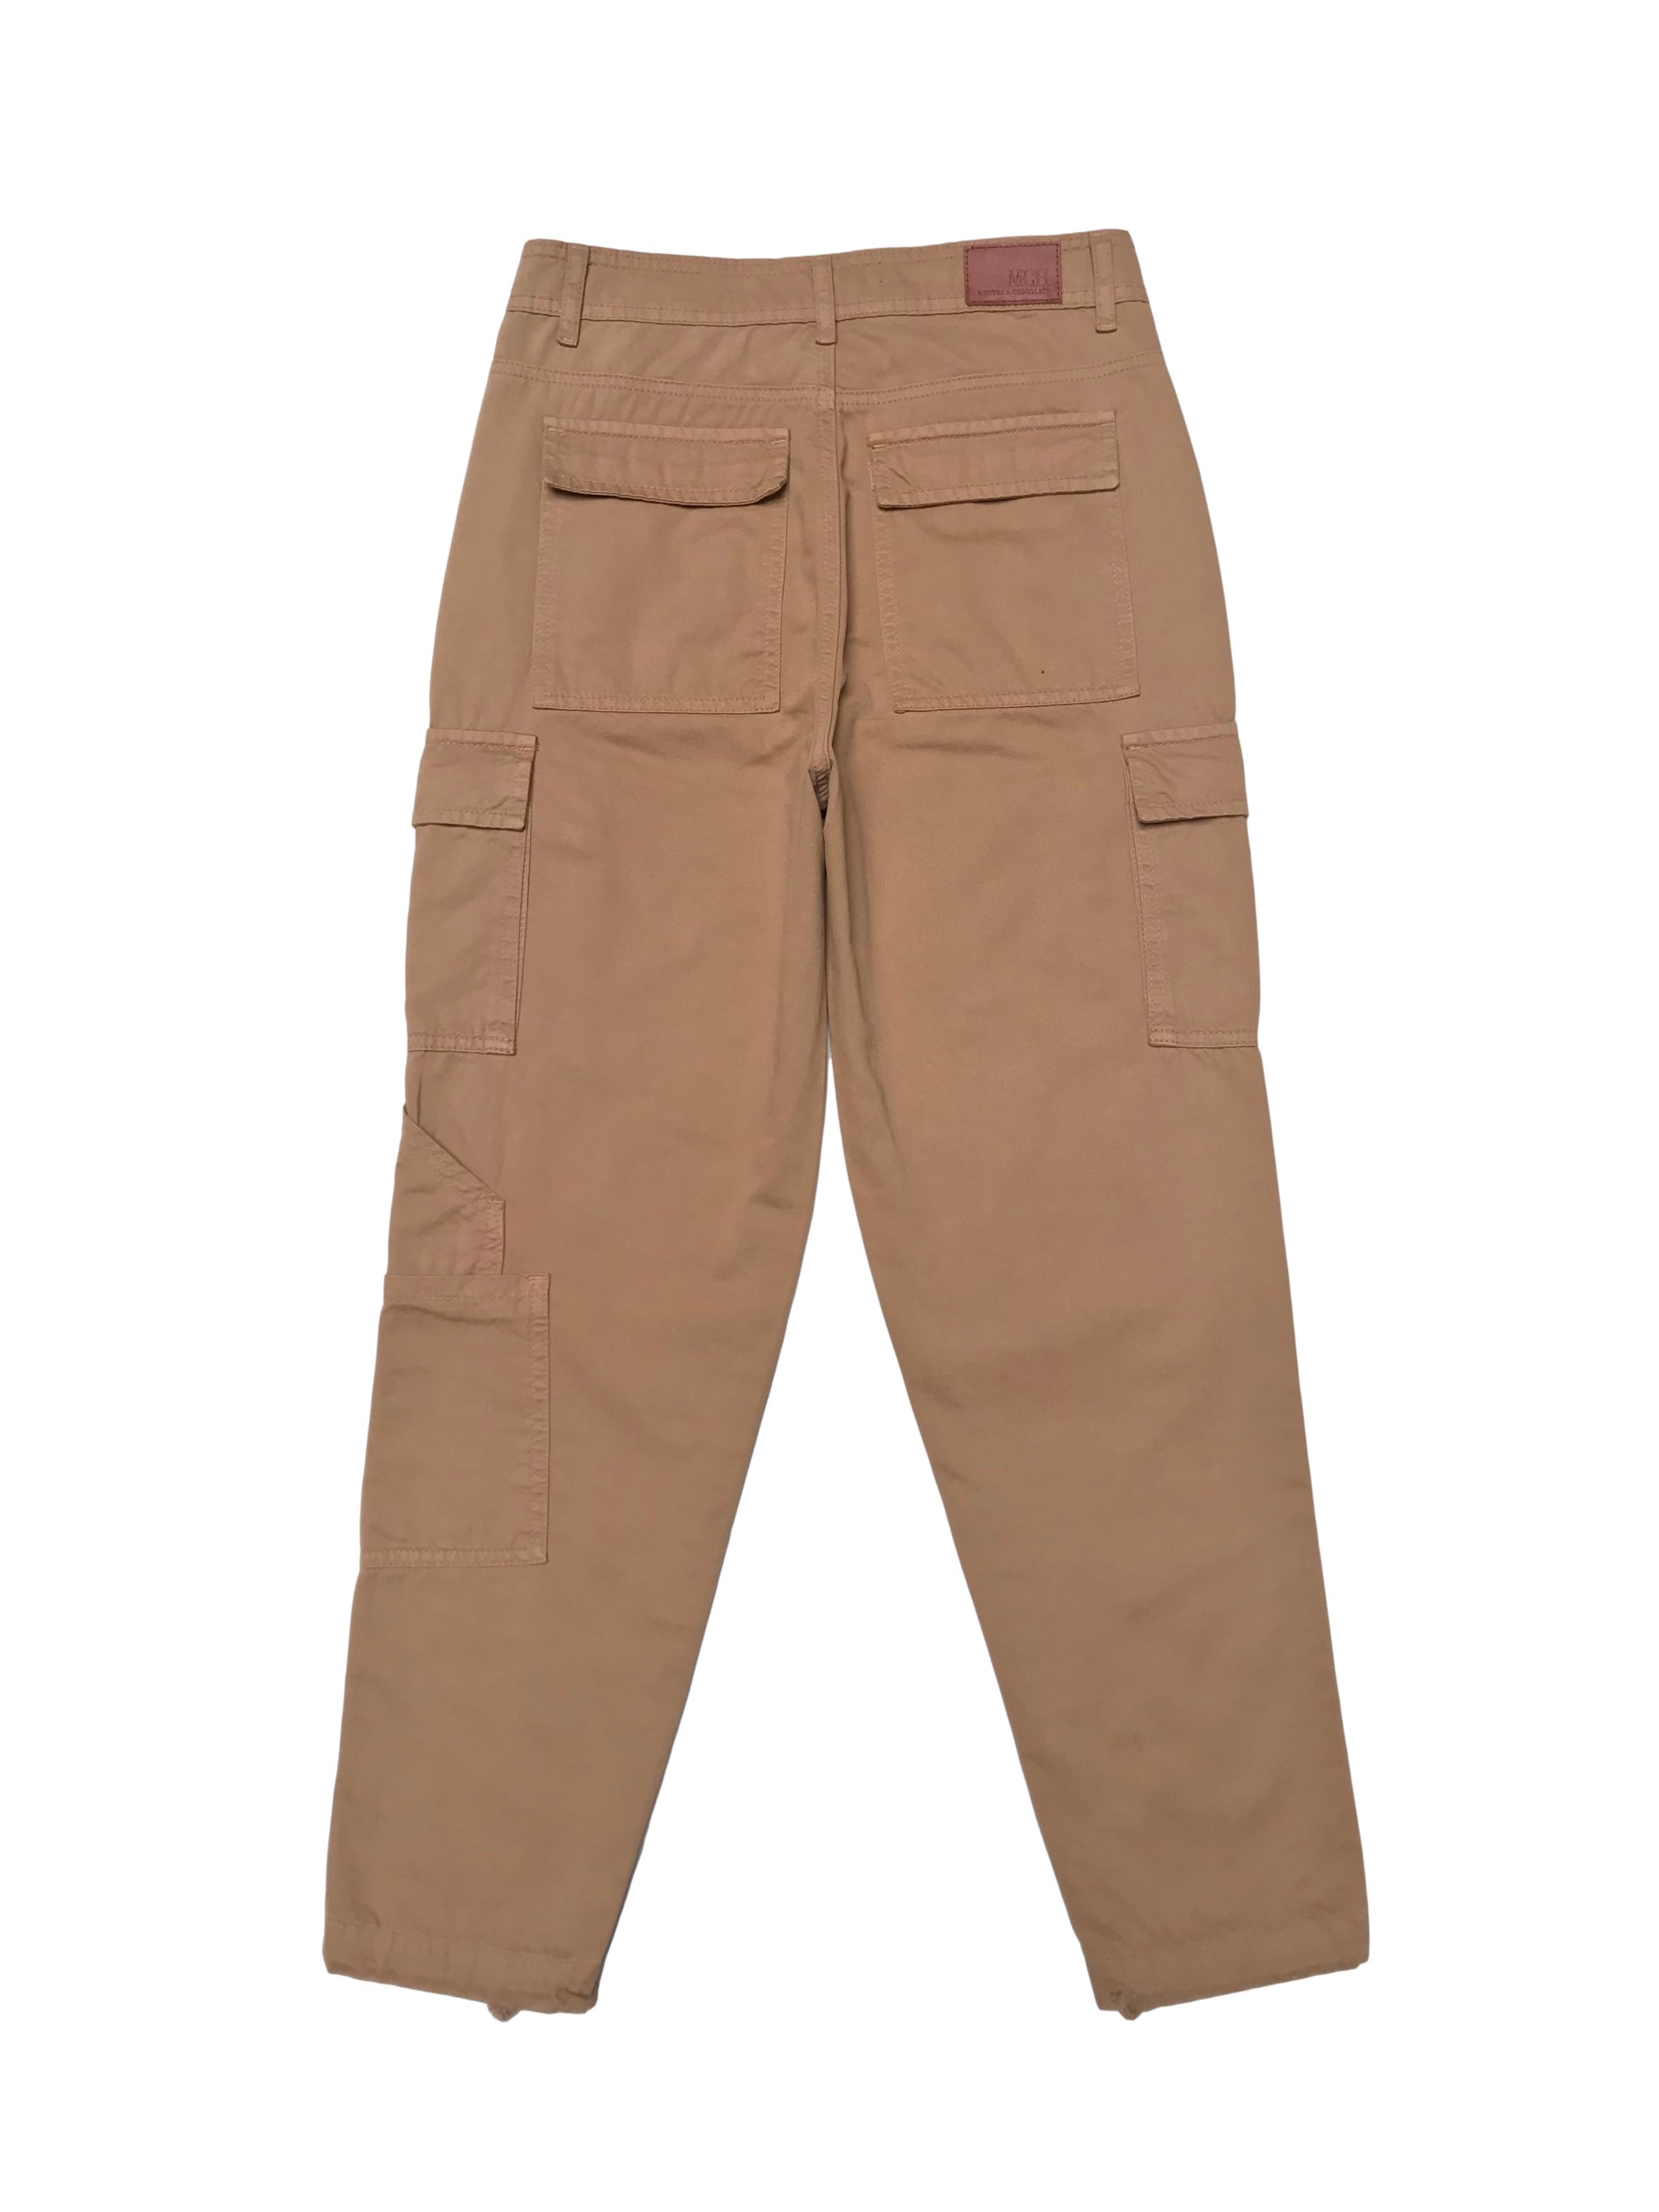 Pantalón cargo Mentha&chocolate a la cintura, 100% algodón beige, se amarra en la basta. Cintura 72cm. Precio original S/ 200